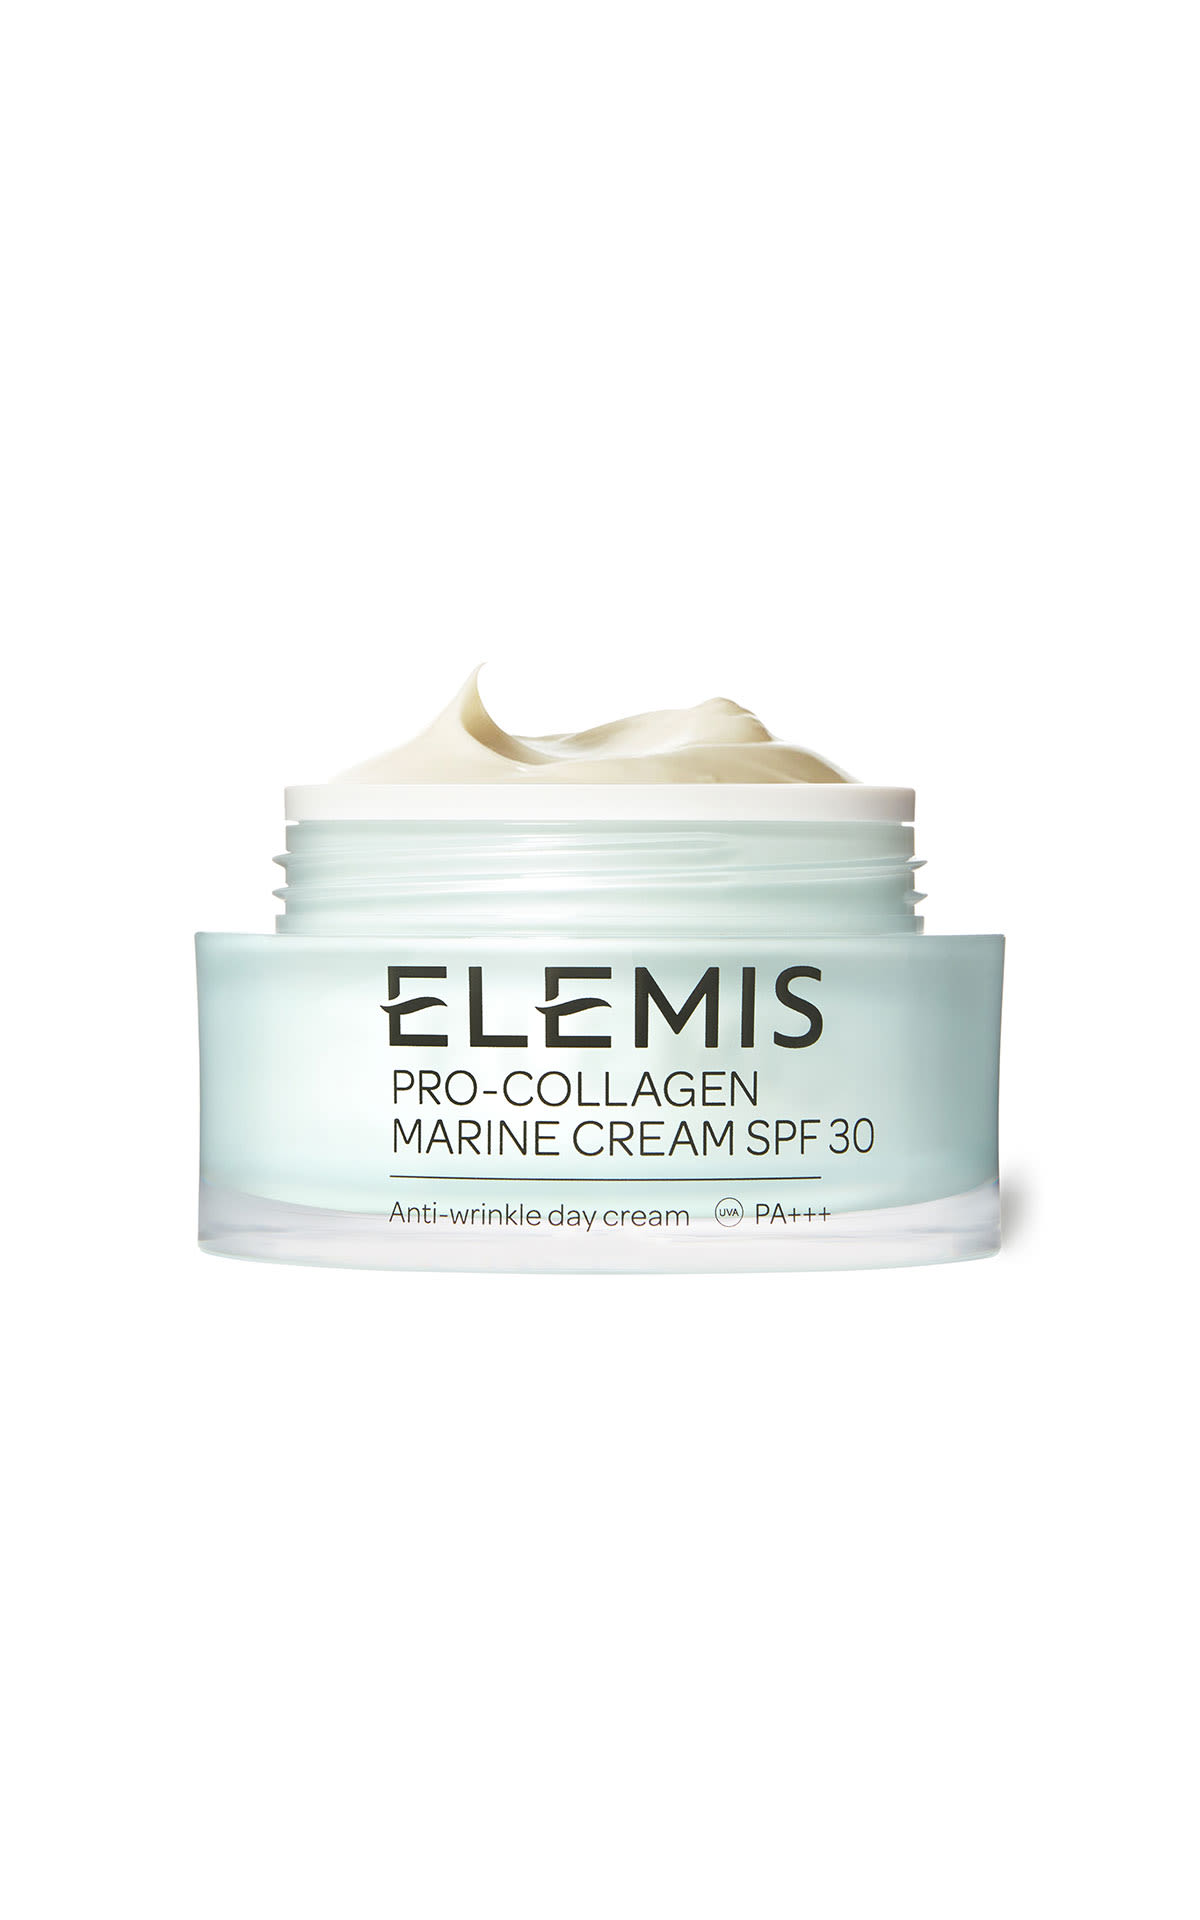 ELEMIS Pro-Collagen Marine cream SPF 30 50ml from Bicester Village